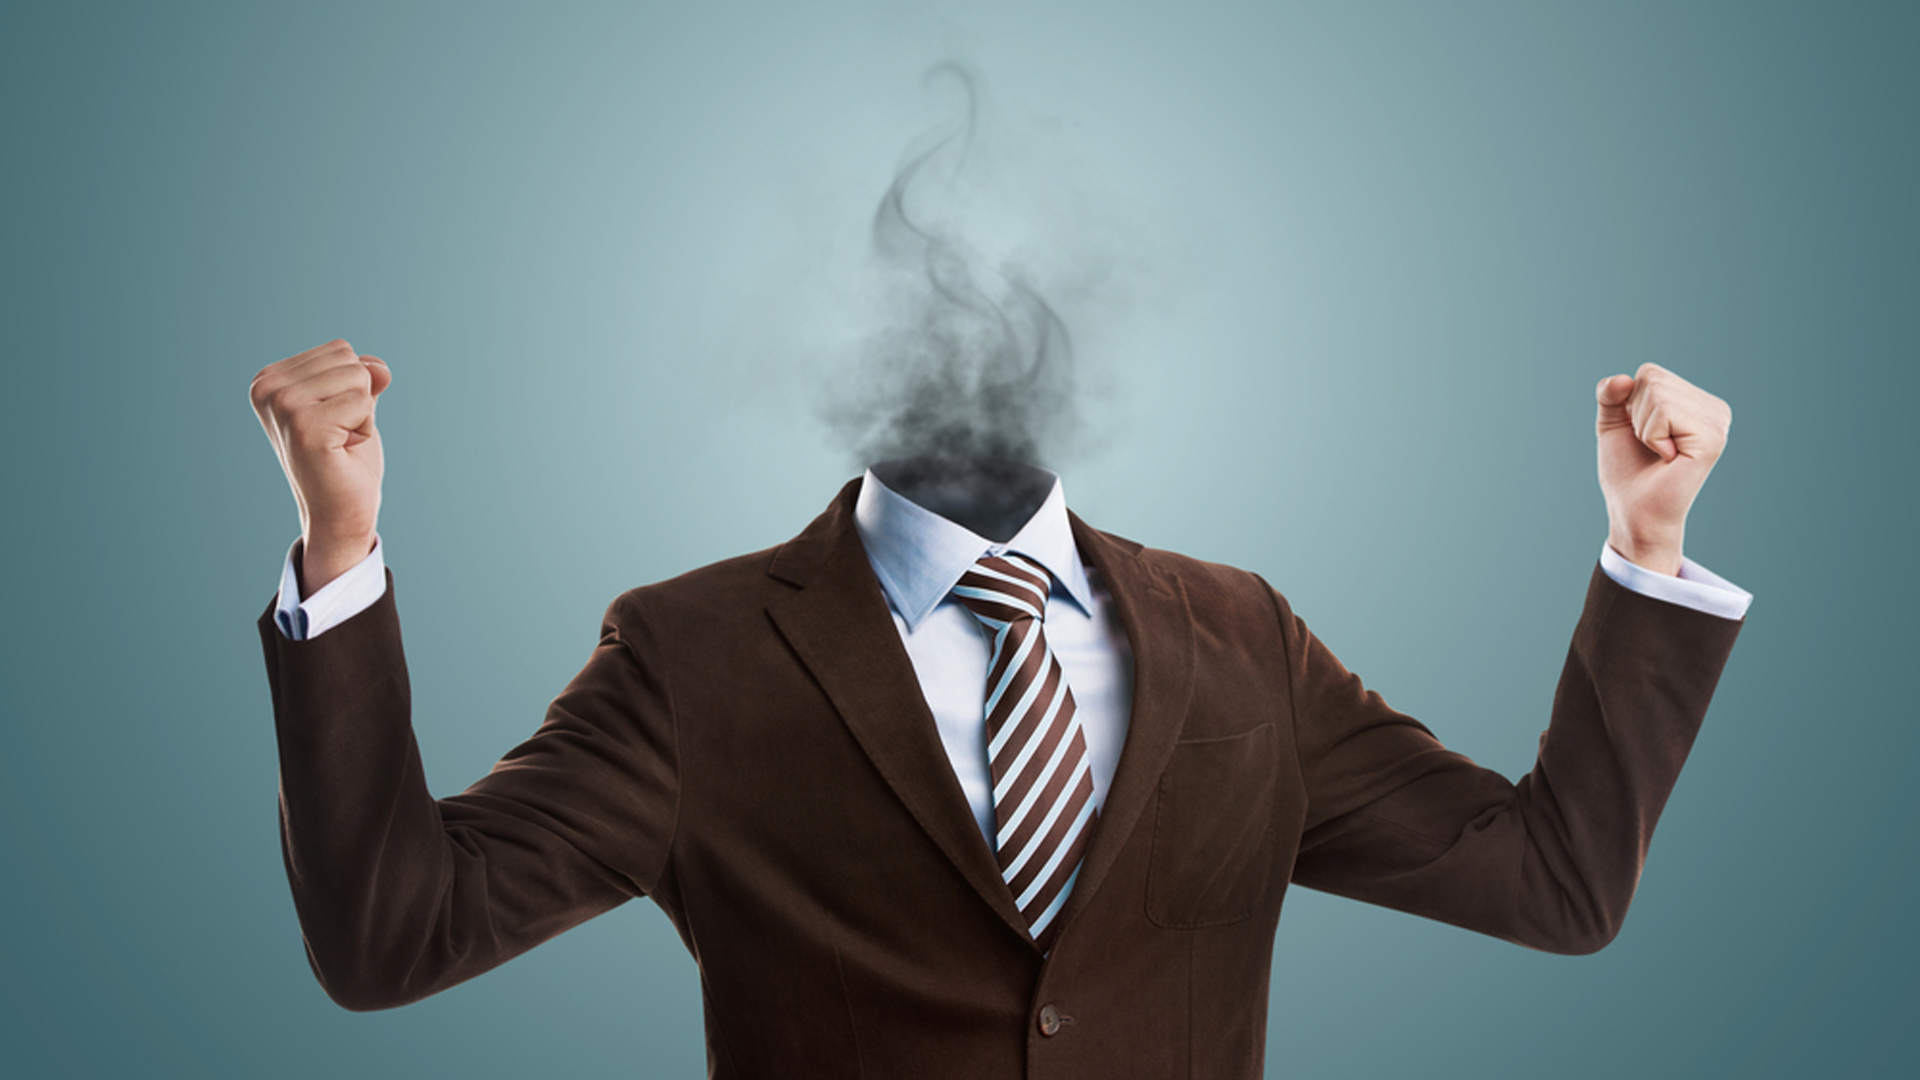 El burnout es un síndrome que se caracteriza por la presencia prolongada de estrés producido por el trabajo (Shutterstock)